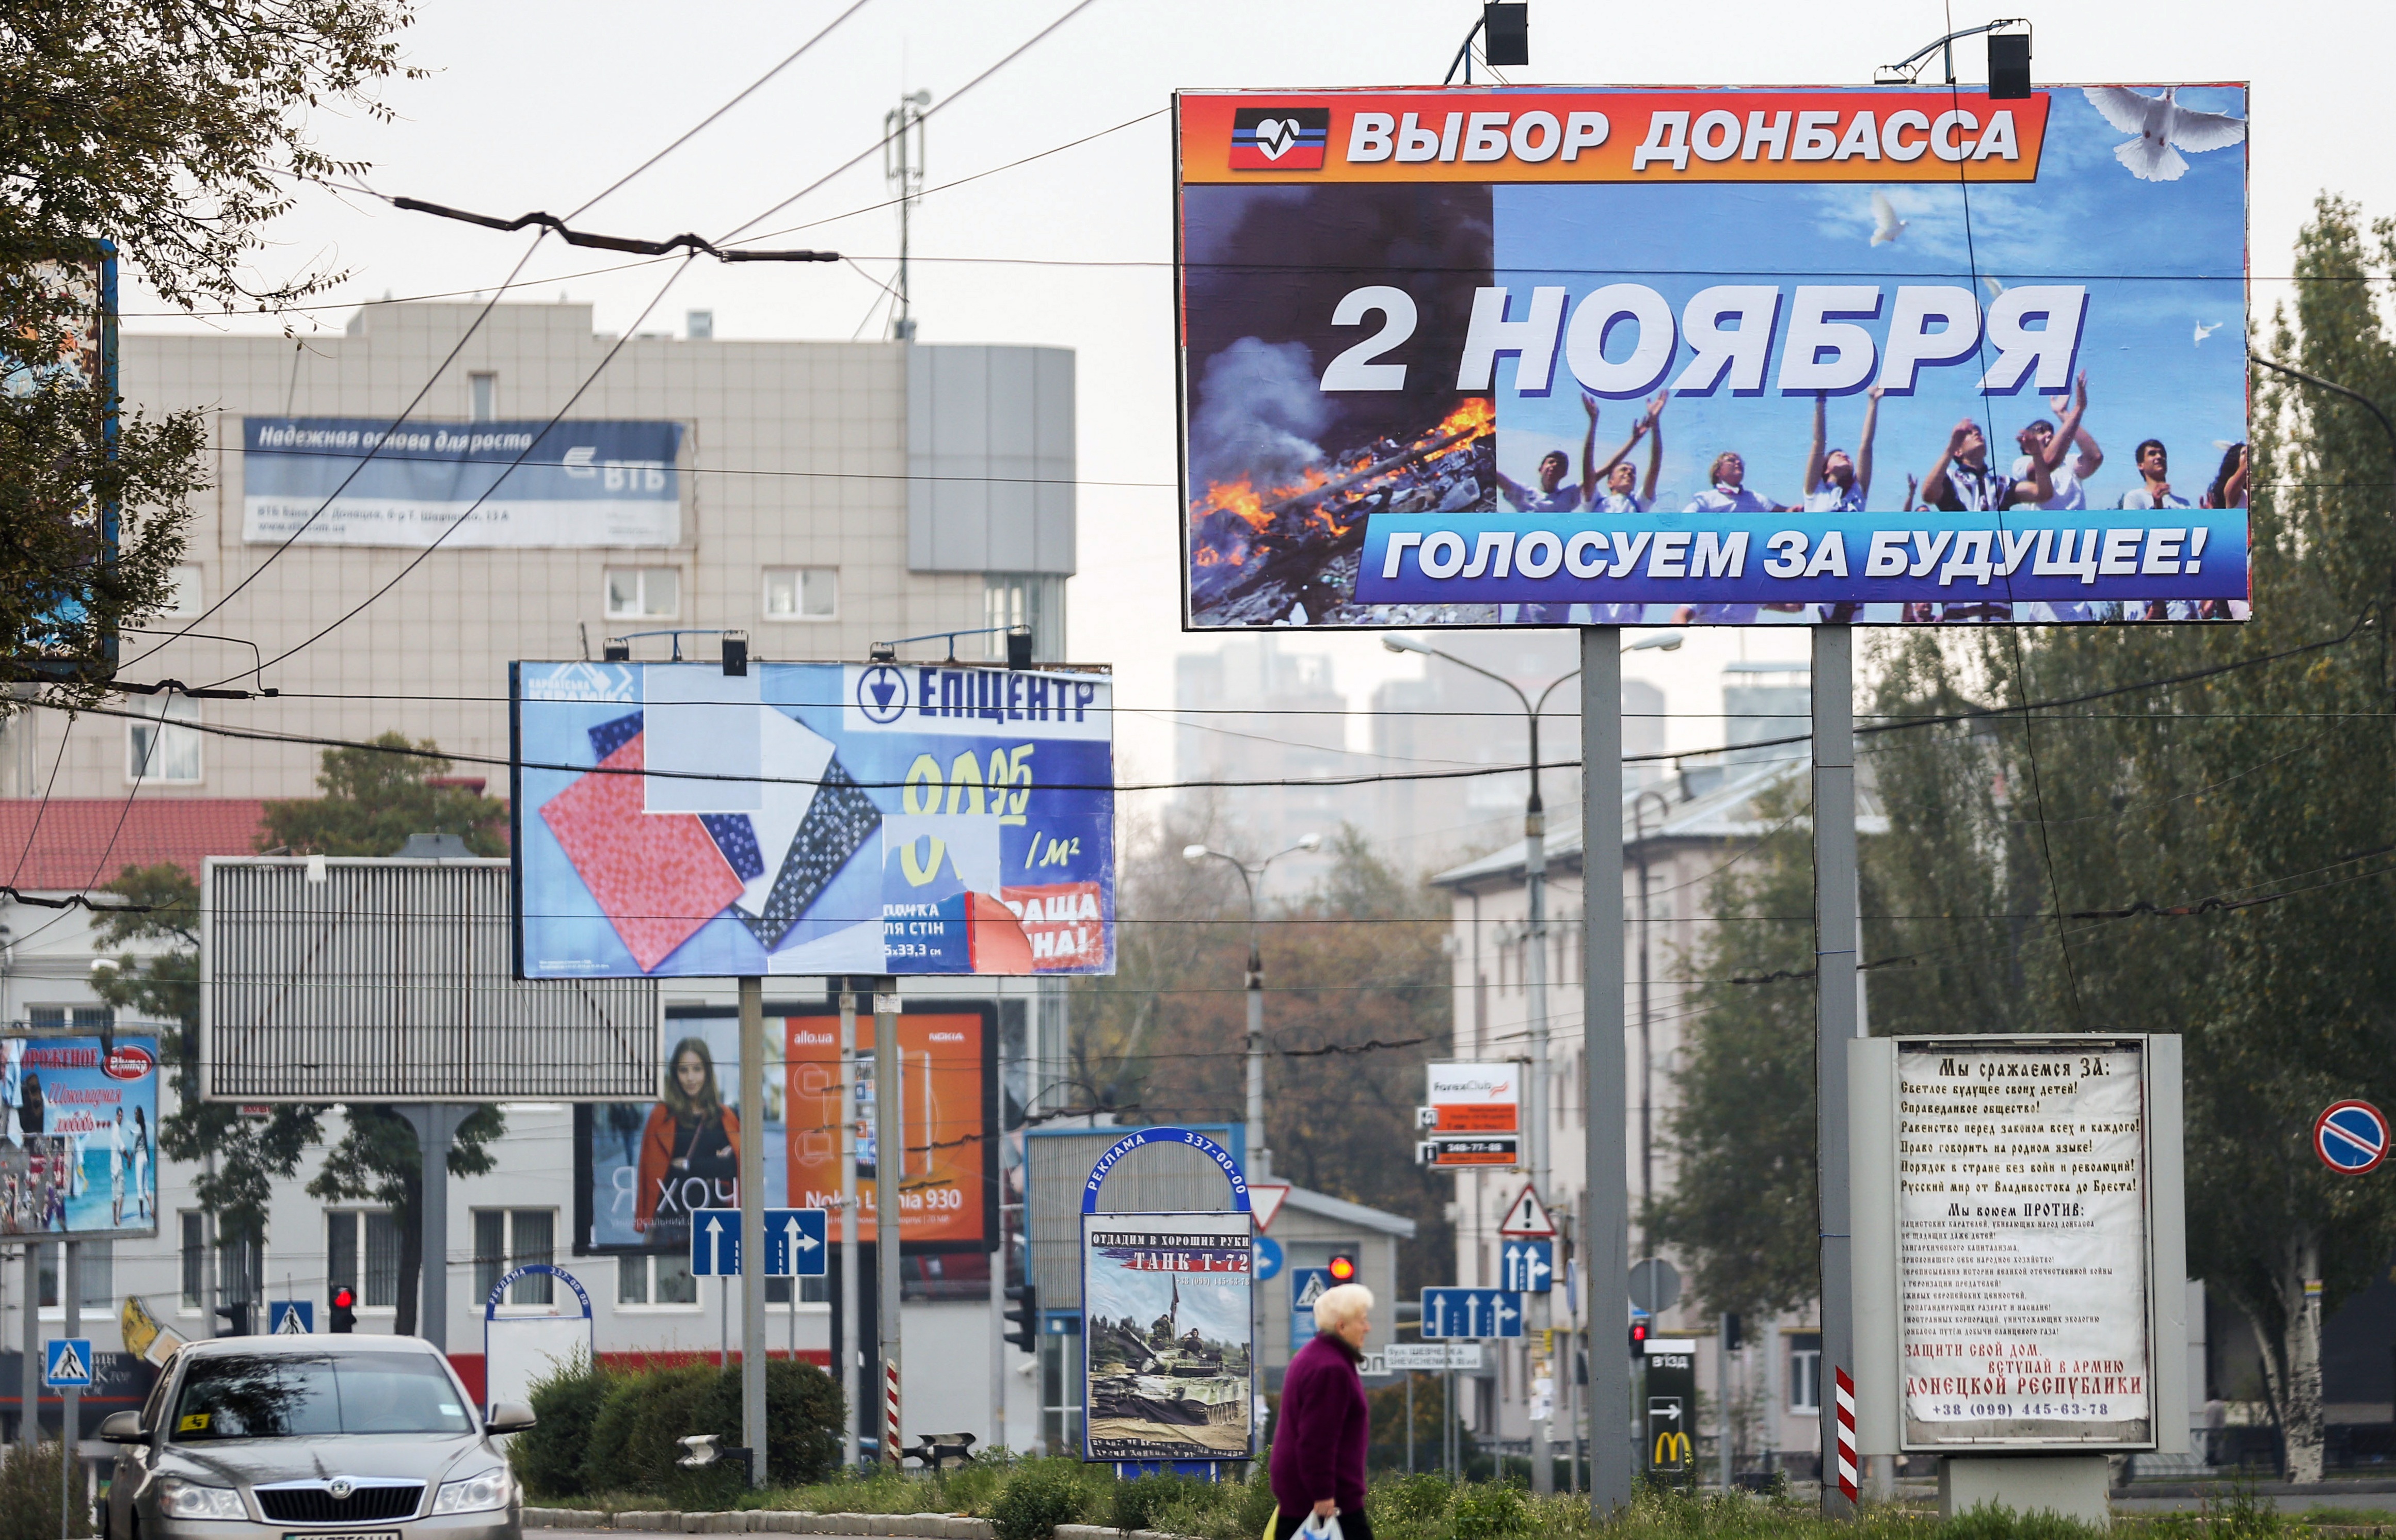 Иностранные наблюдатели прибыли в Донбасс для мониторинга выборов ДНР и ЛНР